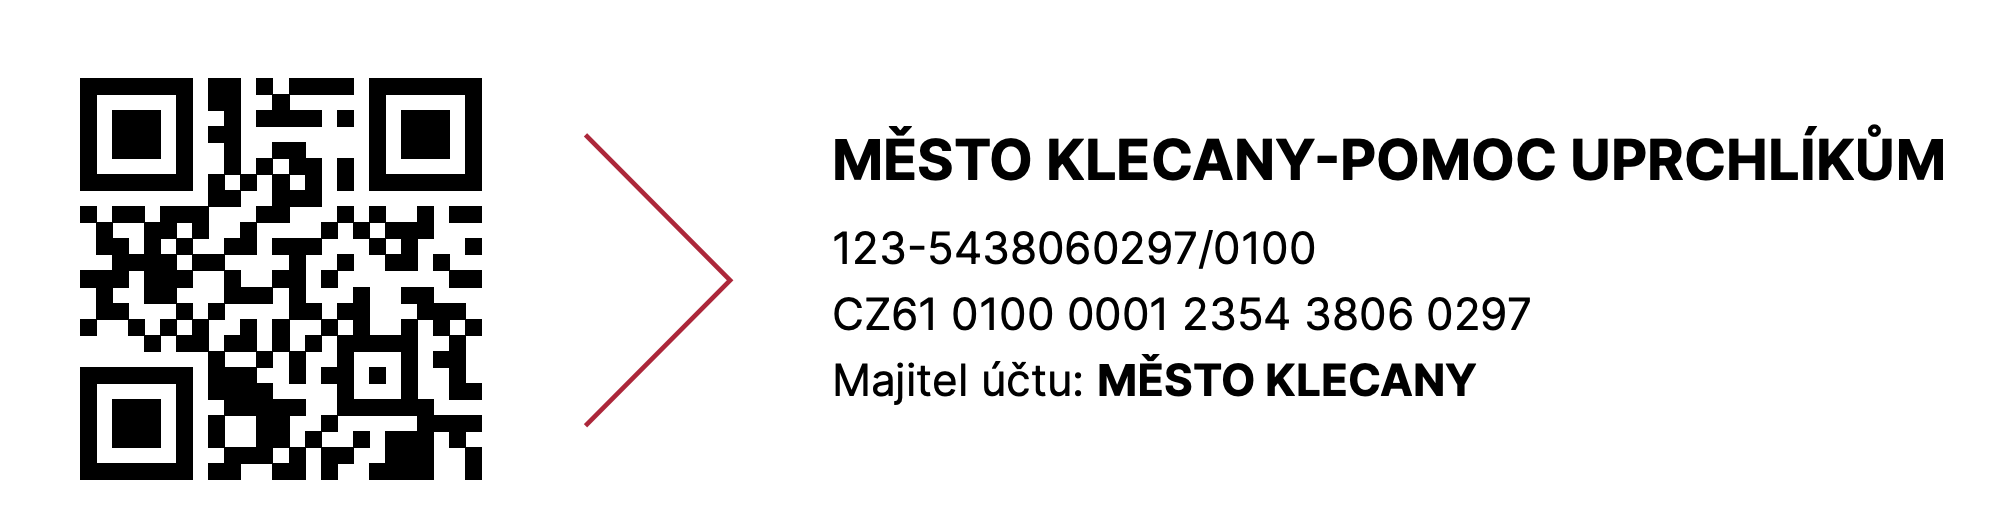 Transparentní účet města Klecany